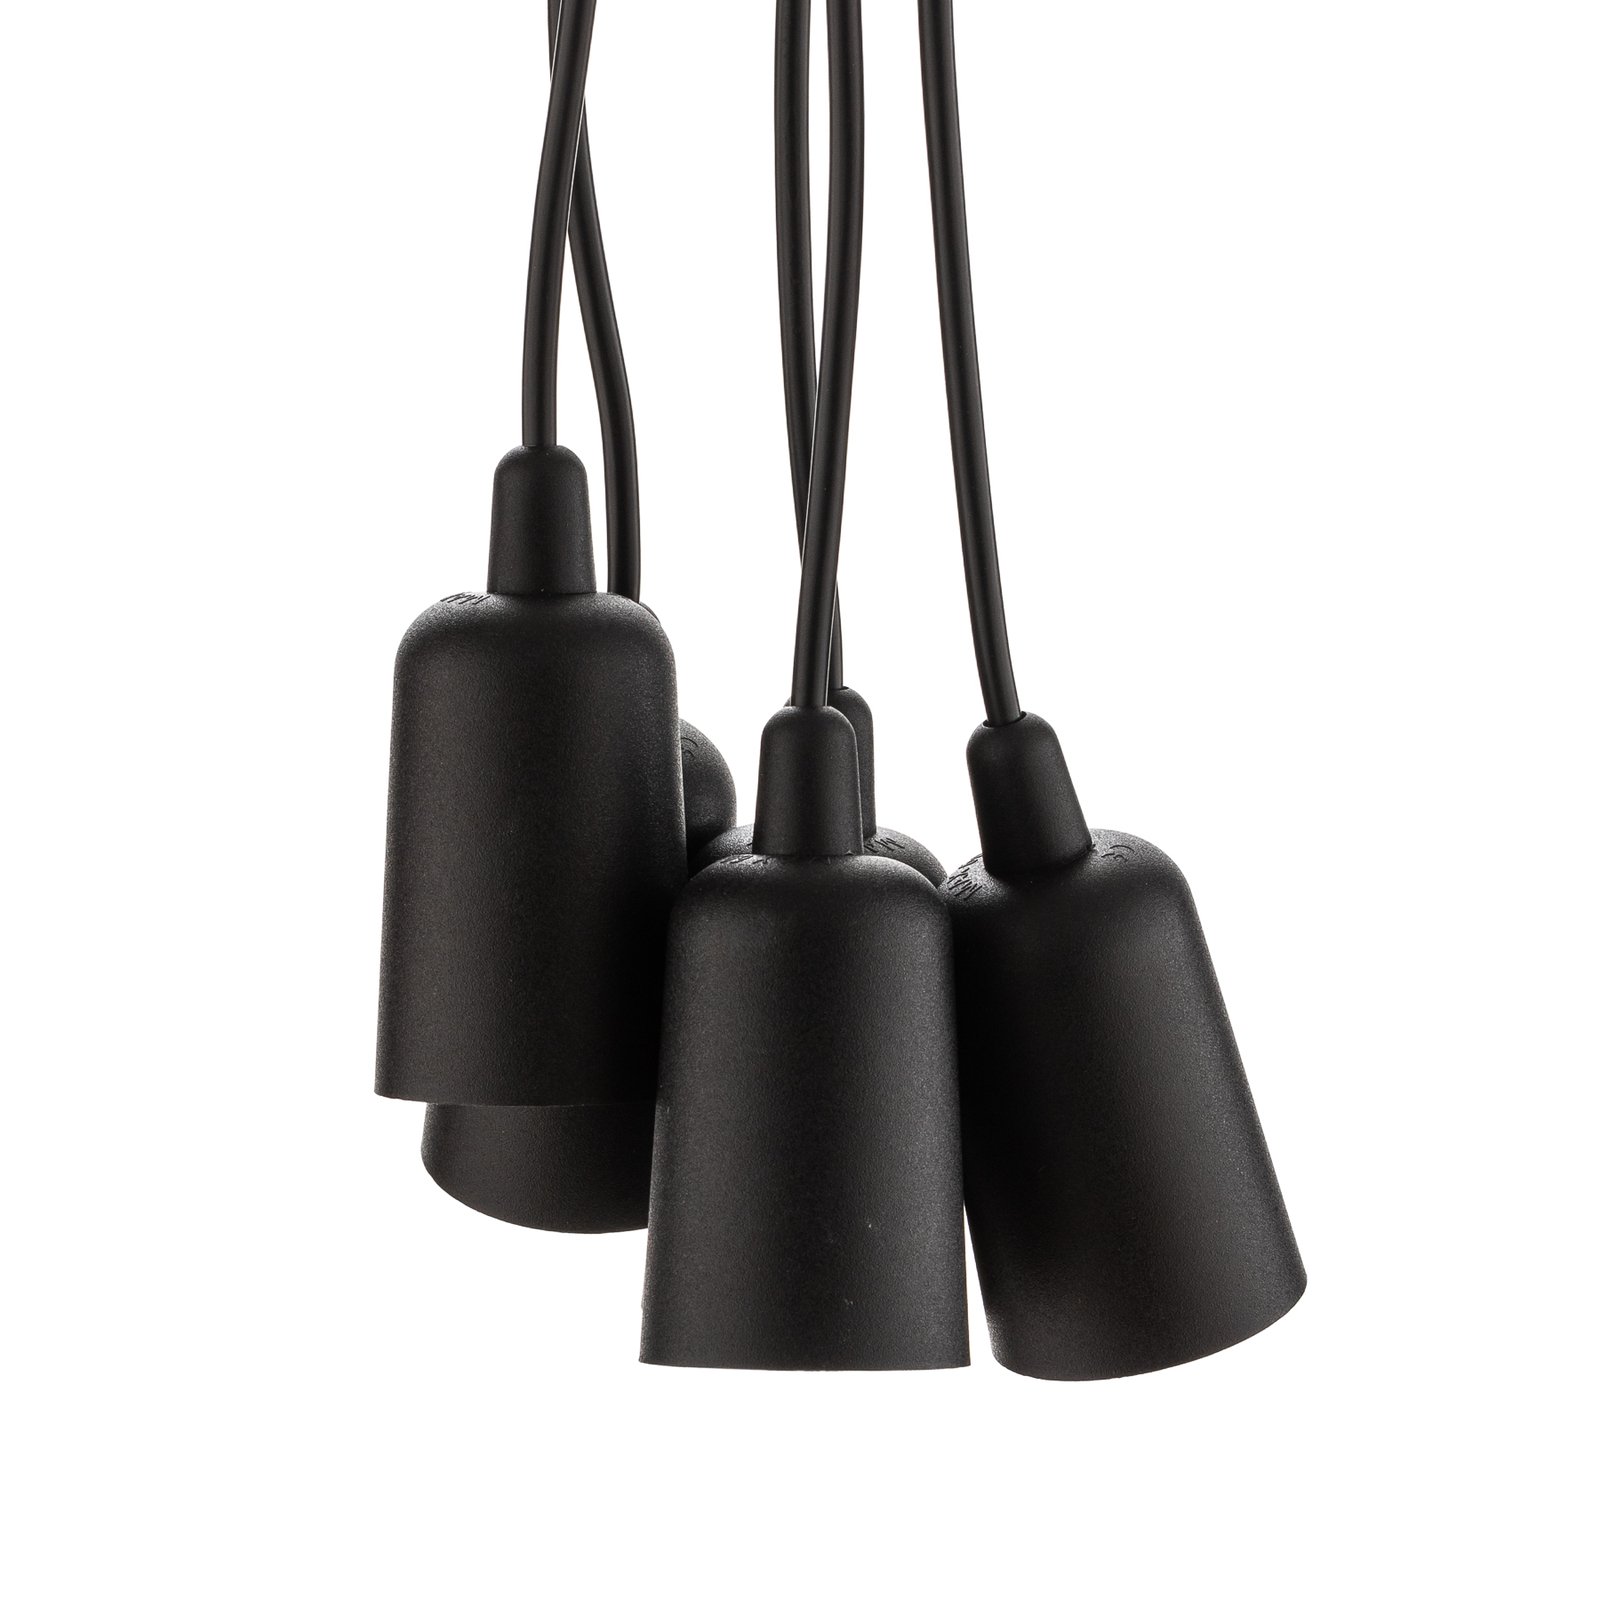 Brasil függő lámpa, fekete, öt izzós